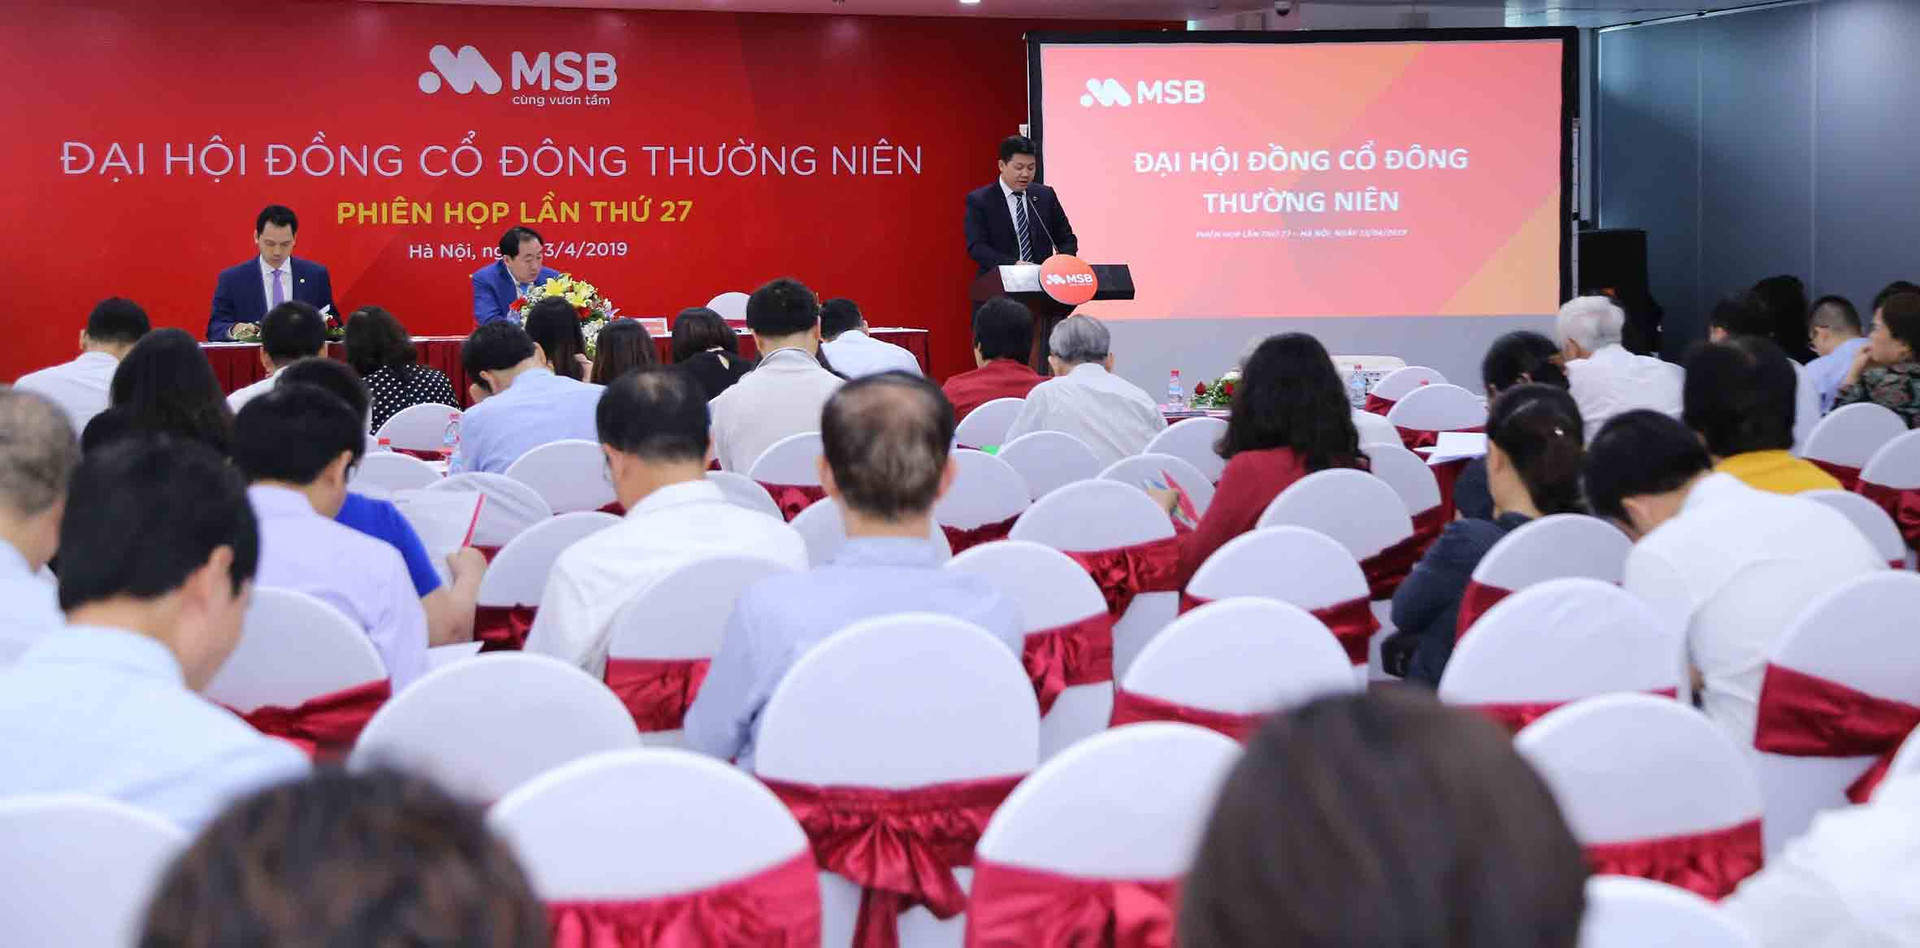 Đại hội đồng cổ đông MSB 2019: Bước chuyển mình lớn trong giai đoạn phát triển